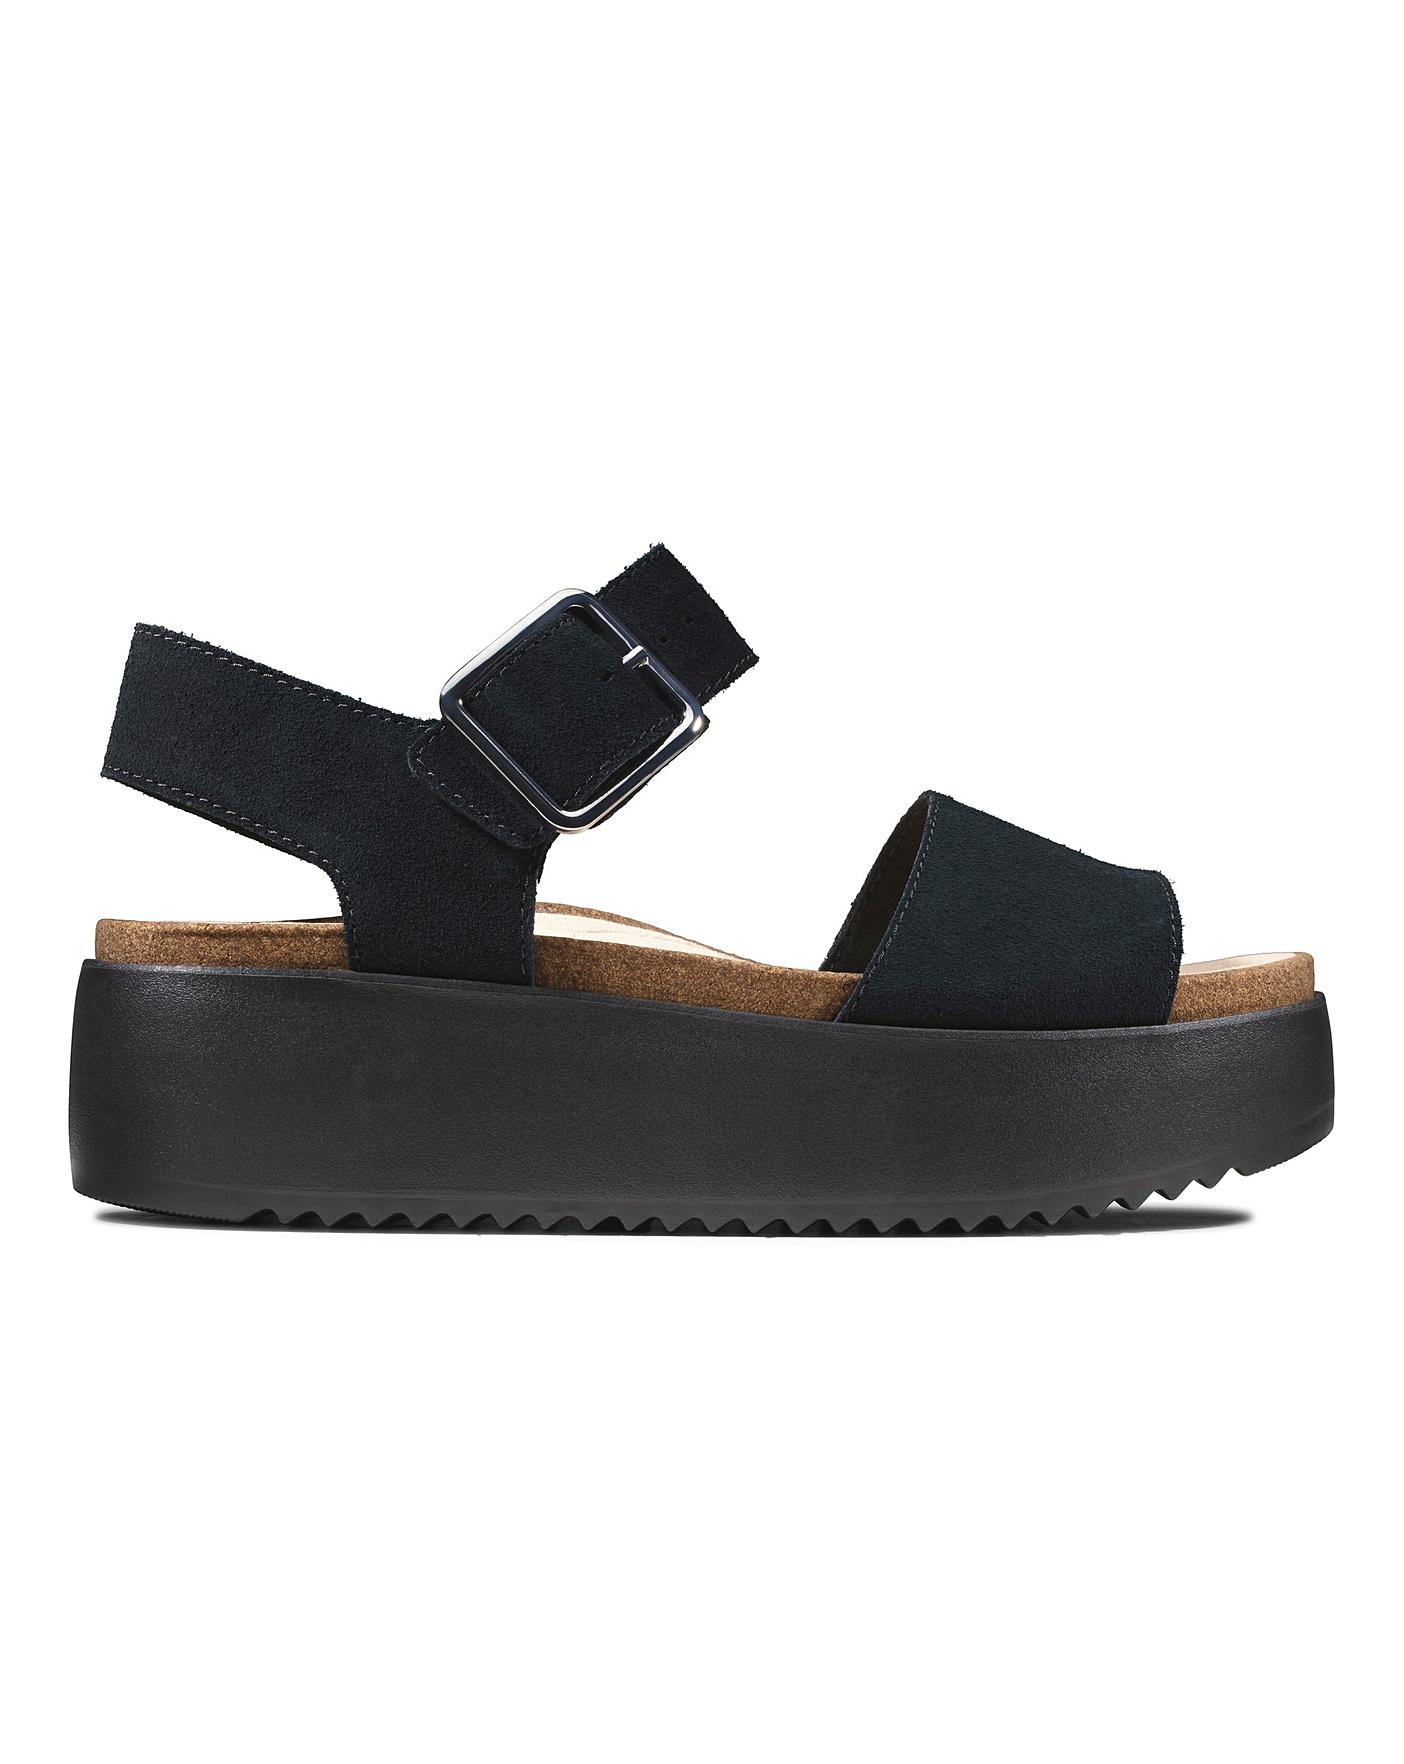 black flatform sandals